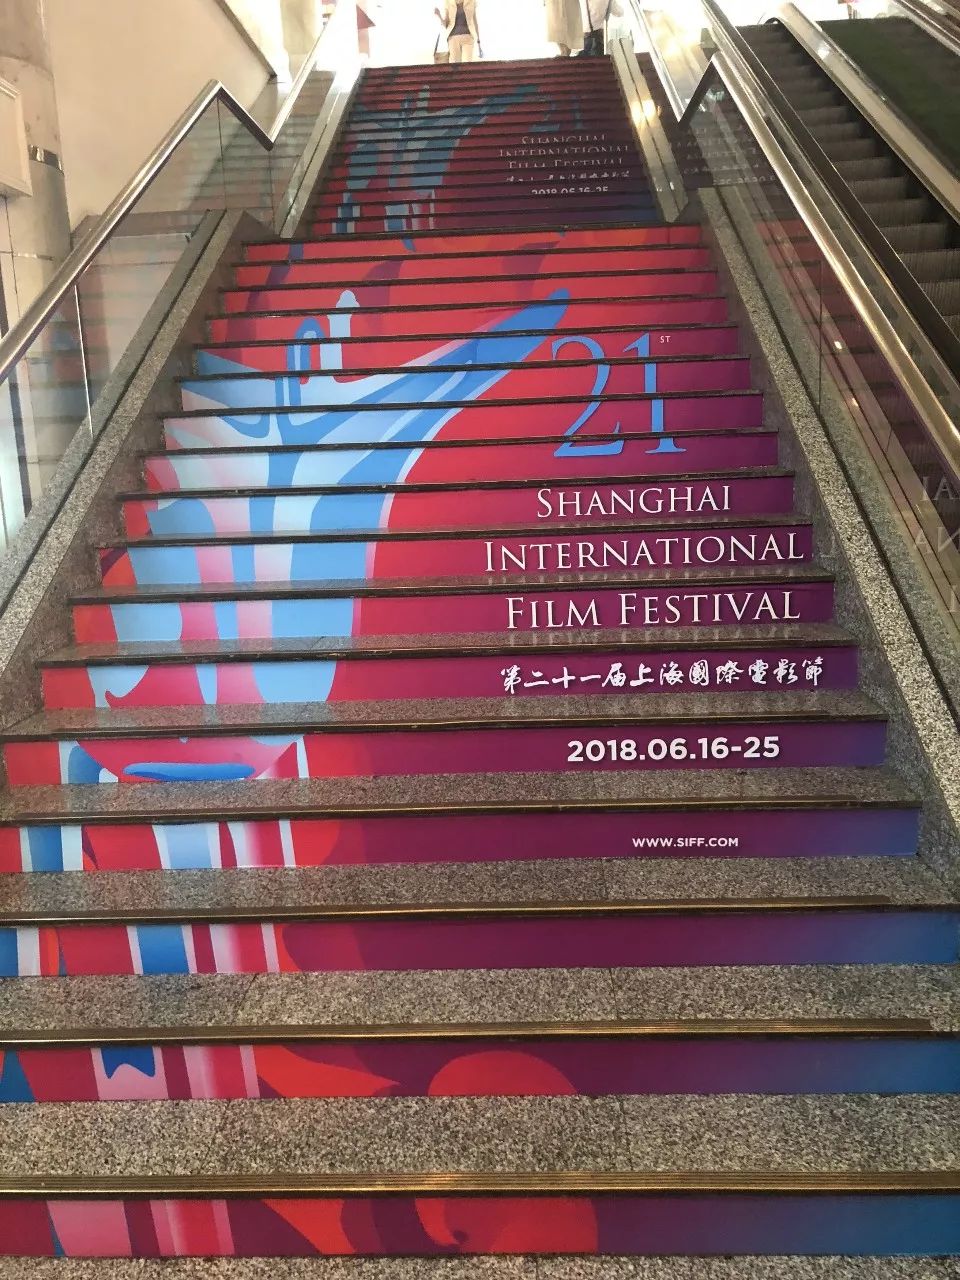 楼梯上都贴满了"一眼望不到尽头"的宣传条幅,上海影城也是非常用心了